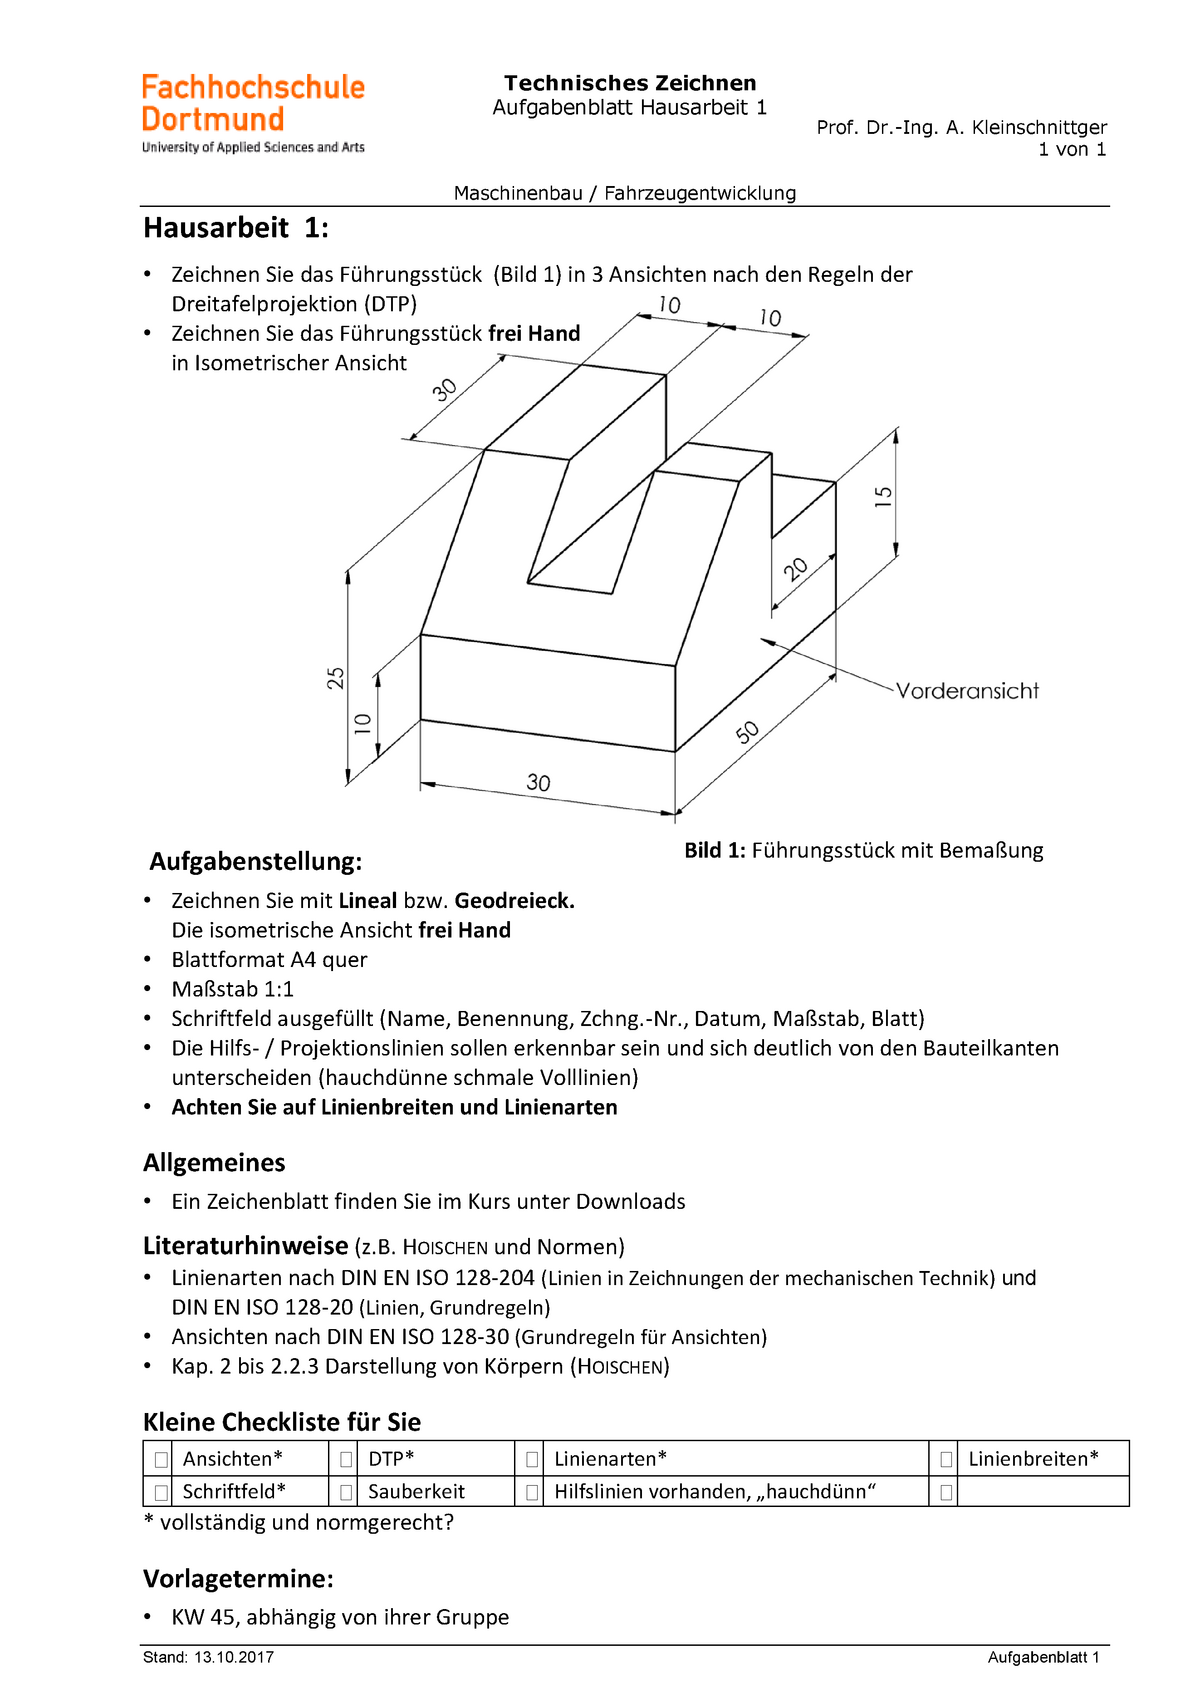 Hausarbeit 01 - Technisches Zeichnen Aufgabenblatt Hausarbeit 1 Prof.  Dr.-Ing. A. Kleinschnittger 1 - Studocu